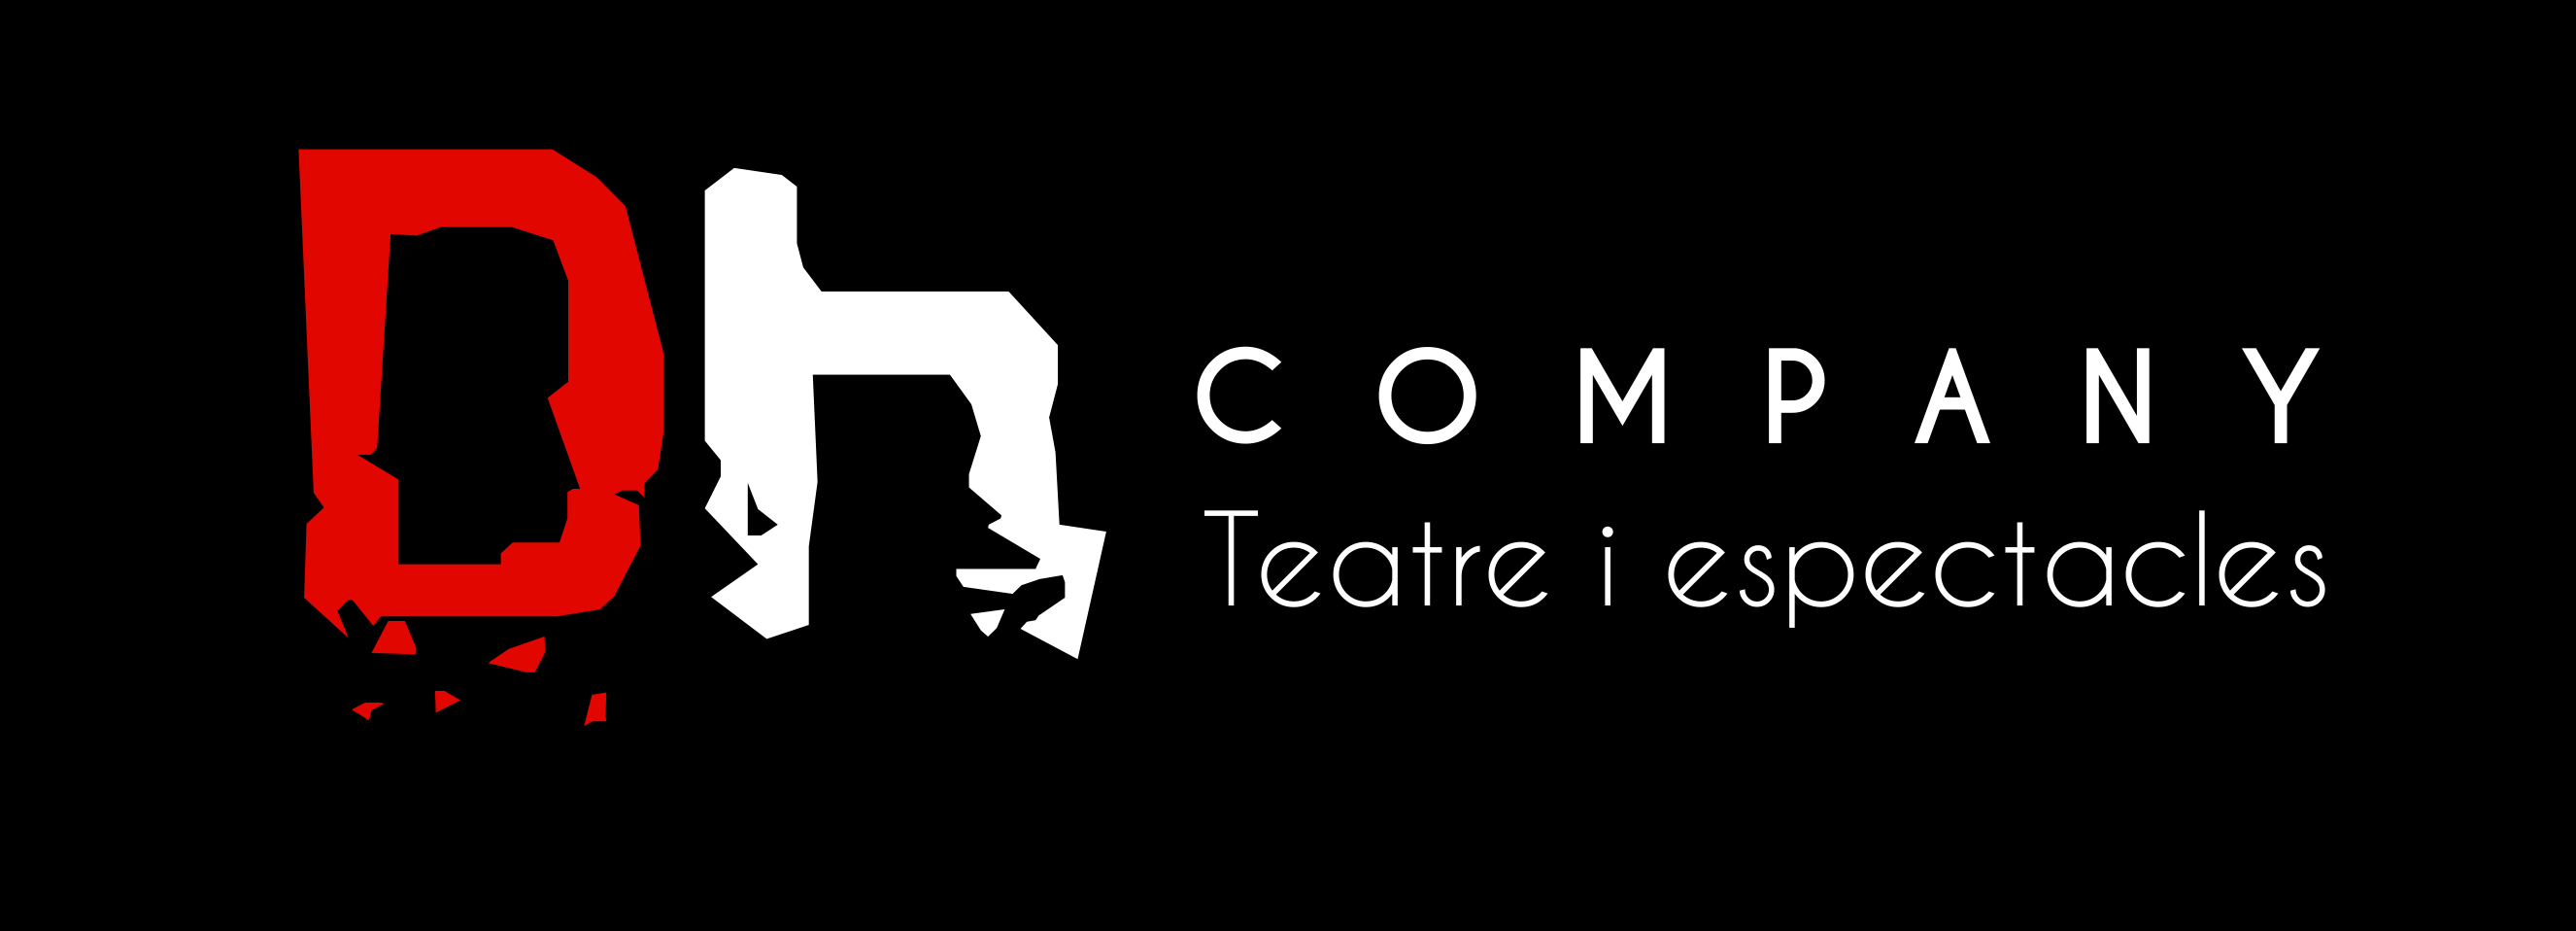 DH COMPANY - Teatre i espectacles